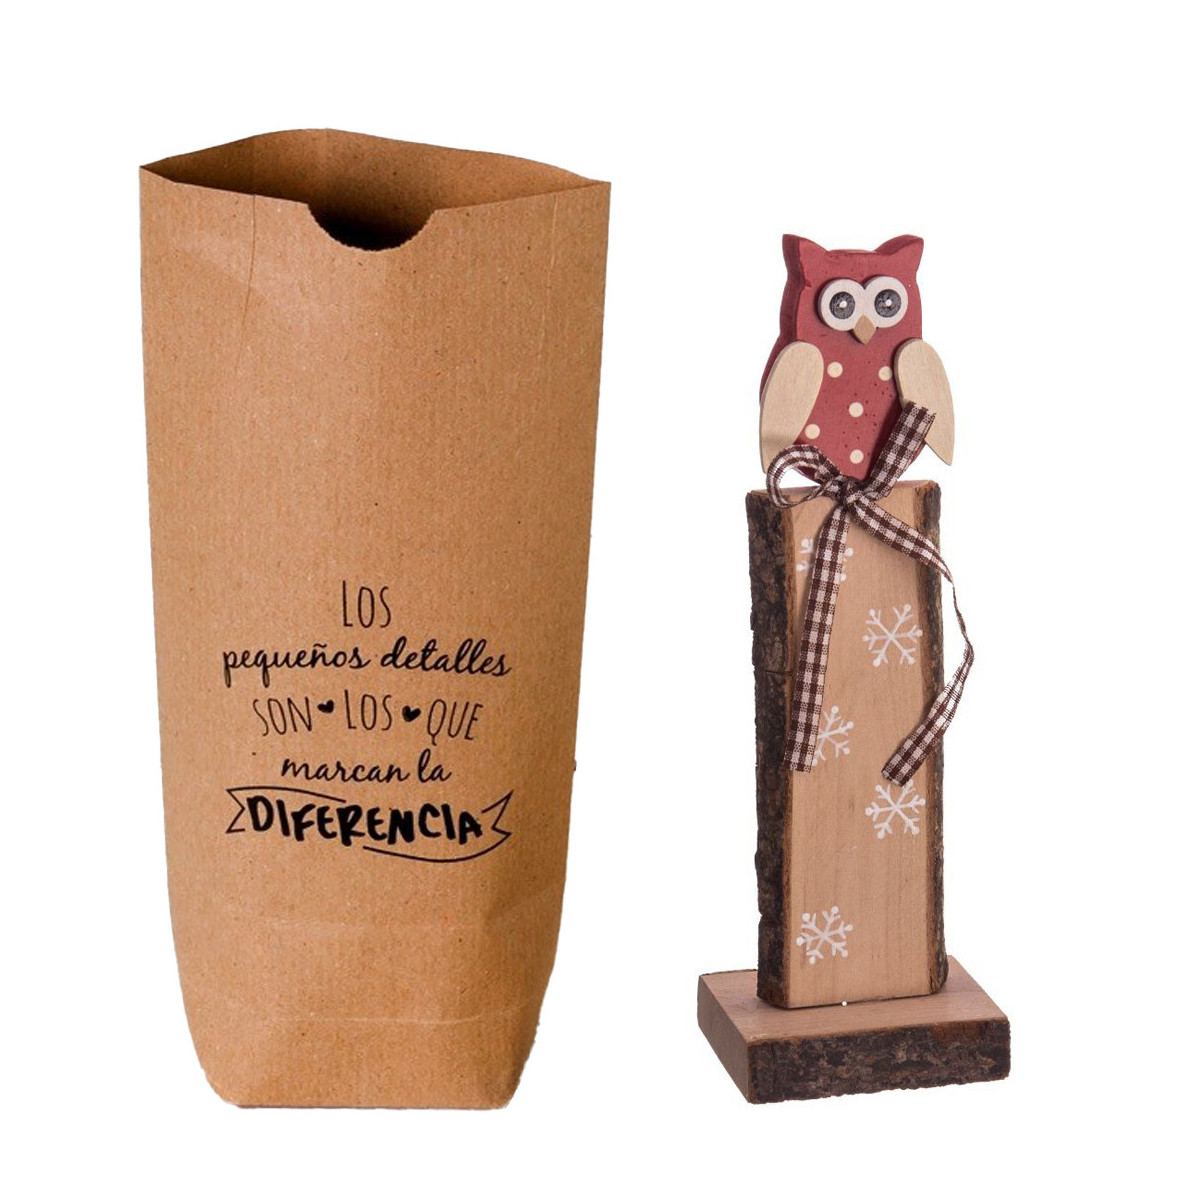 Décoration de noël en forme de hibou en bois dans un sac en papier kraft avec phrase de dédicace